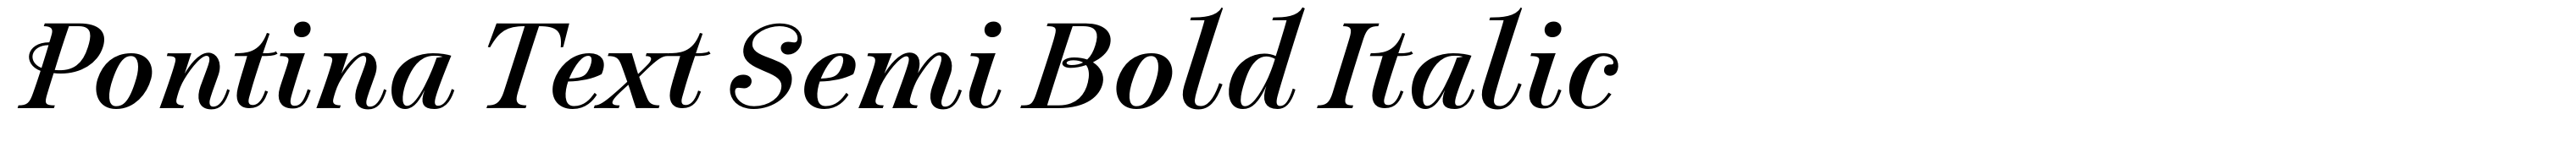 Pontina Text Semi Bold Italic